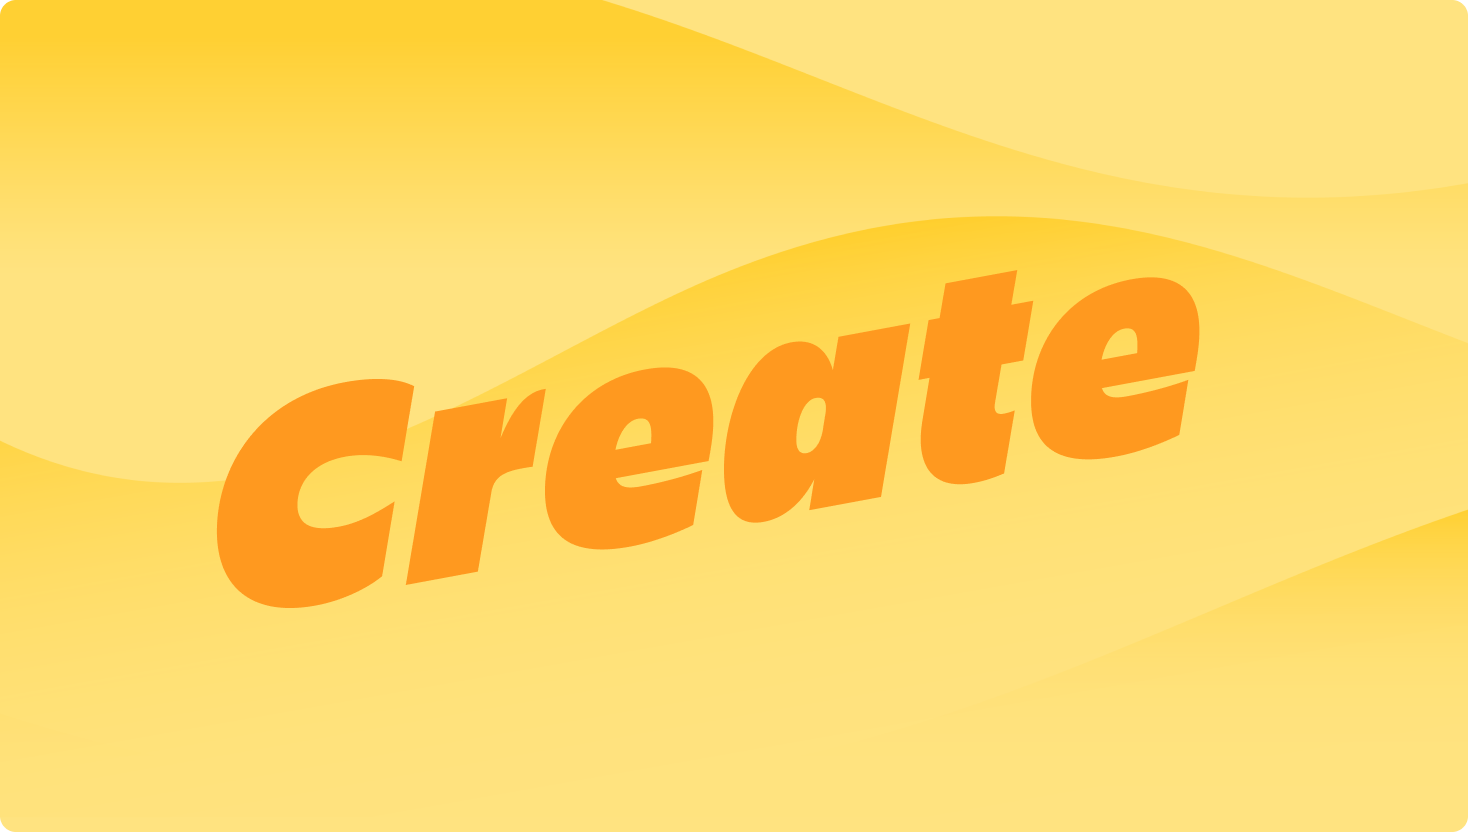 Obraz przedstawiający żółtą falę z wyróżniającym się słowem „Create”